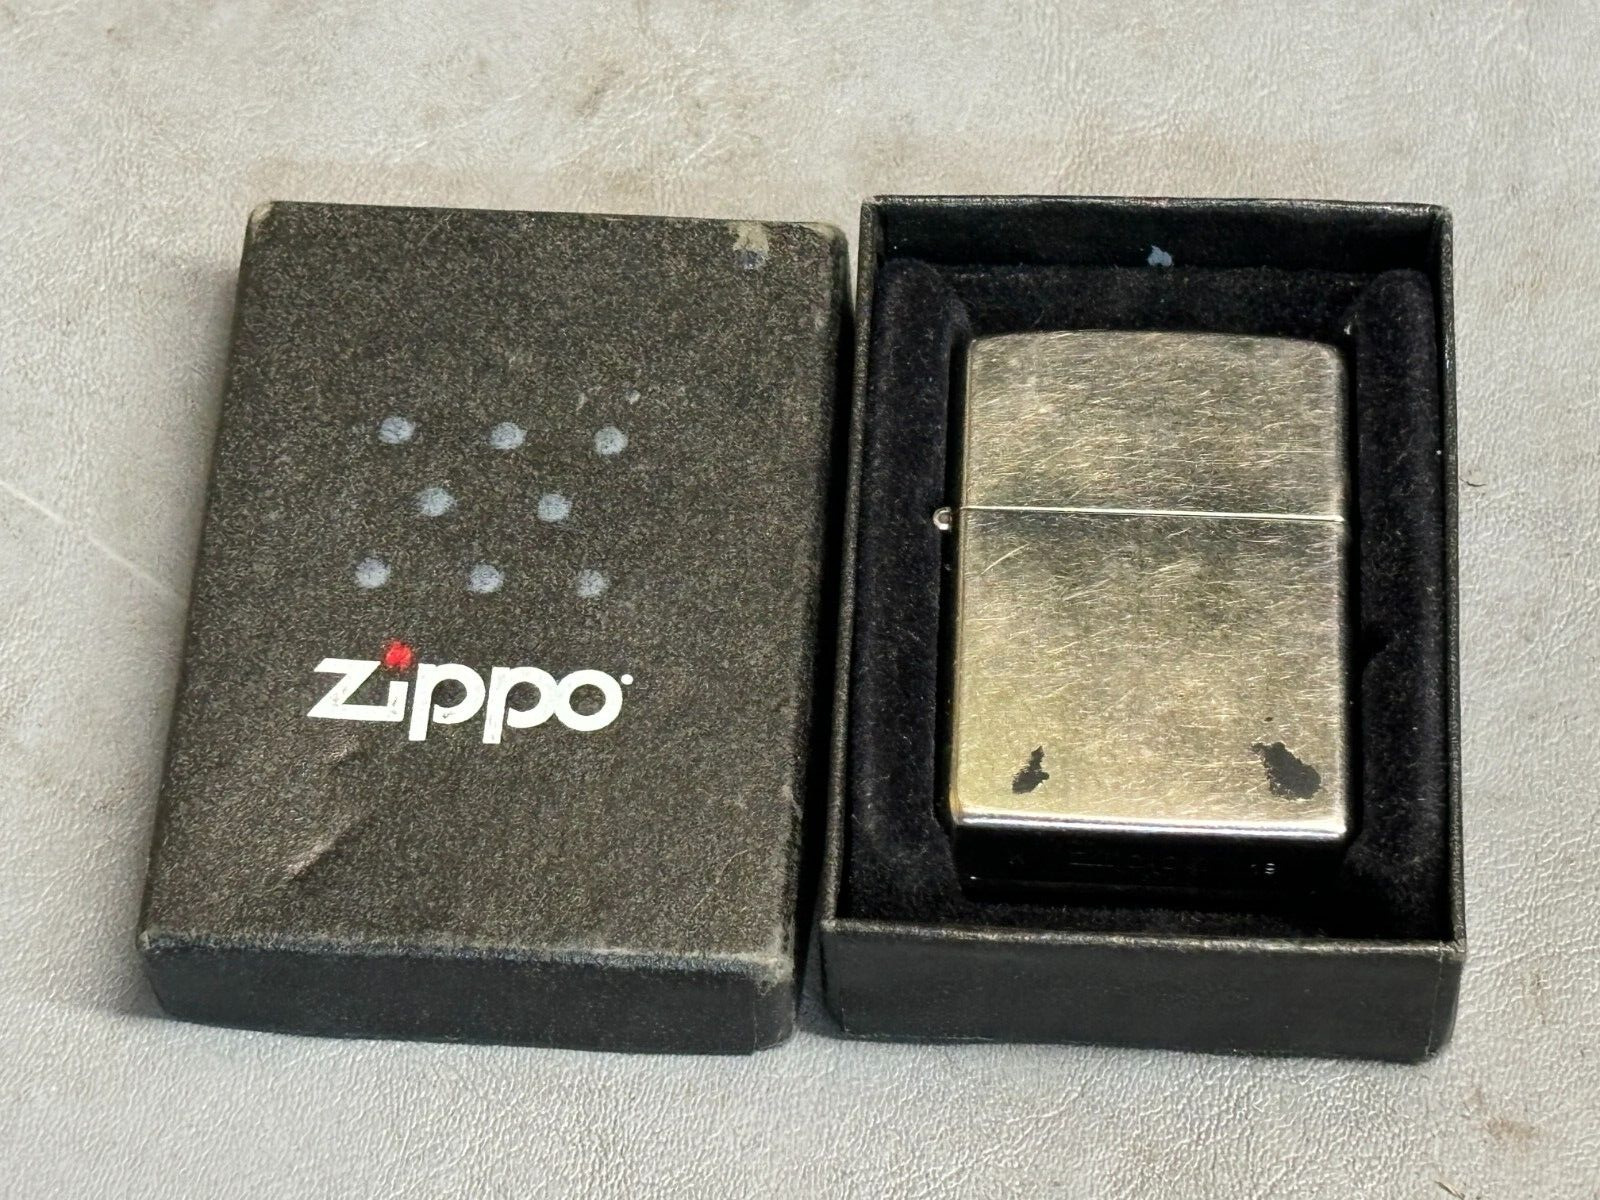 2019 Zippo Regular Street Chrome Lighter - Made in USA - Preowned - Fired